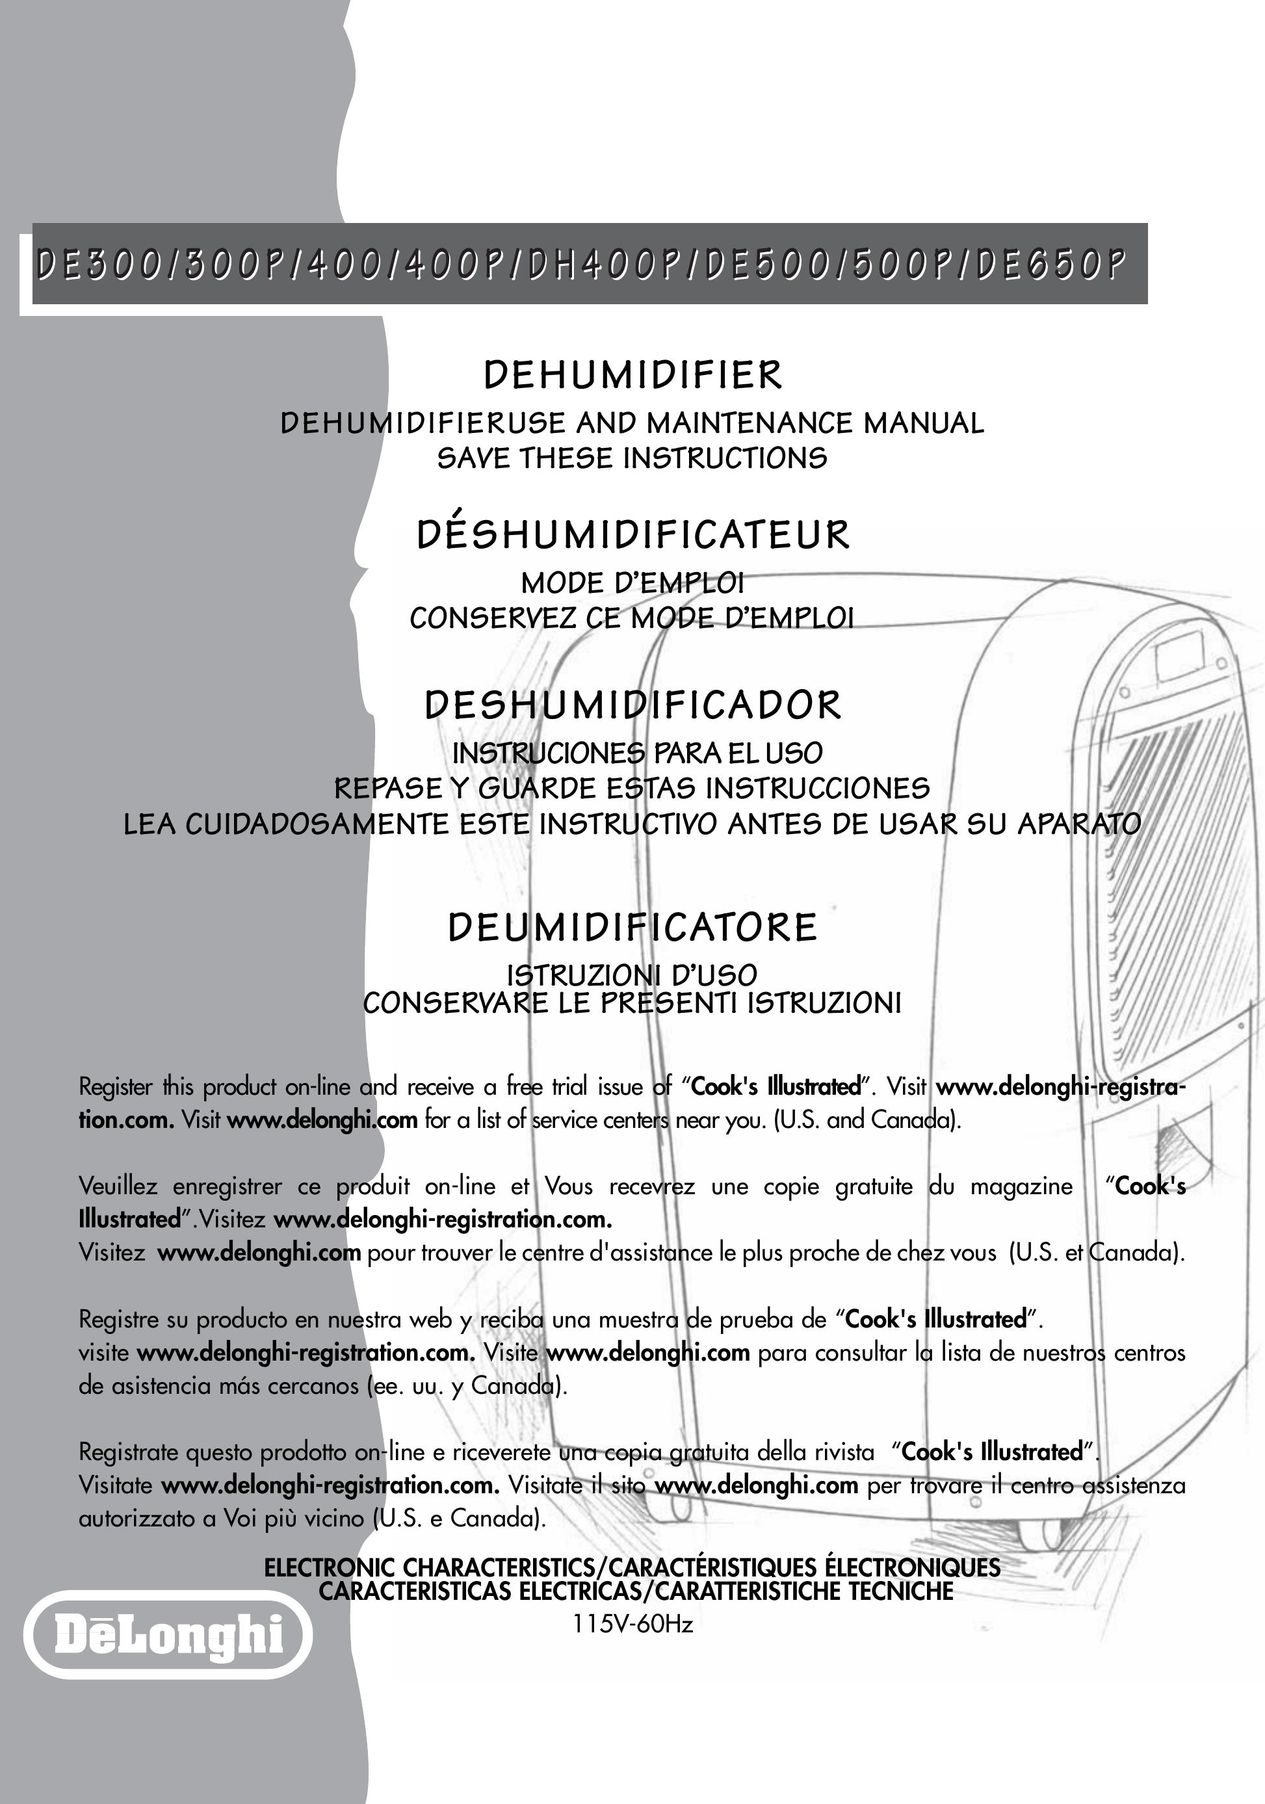 DeLonghi DE500 Dehumidifier User Manual